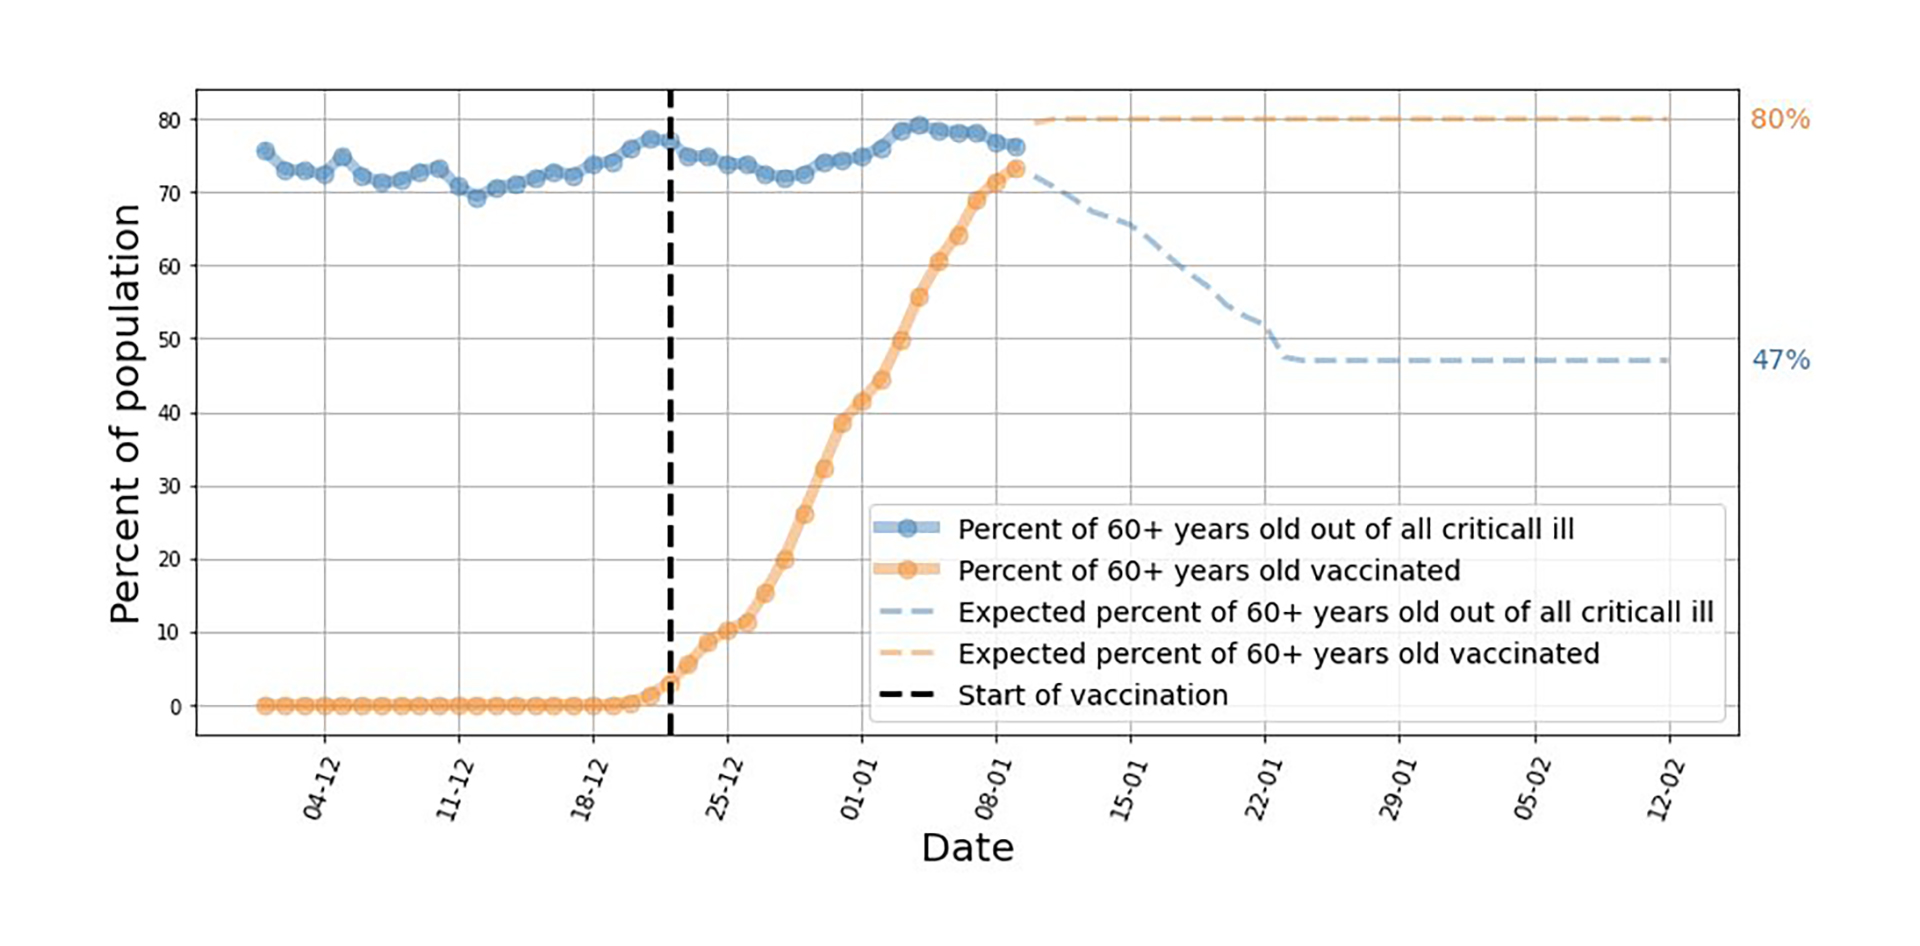 La línea punteada azul muestra la esperanzadora proyección sobre la caída de pacientes críticos entre los mayores de 60 años. 

En amarillo se muestra el porcentaje de de vacunados entre los adultos mayores. 

Finalmente, la línea punteada negra muestra la fecha en que comenzó la campaña de vacunación

(@segal_eran)